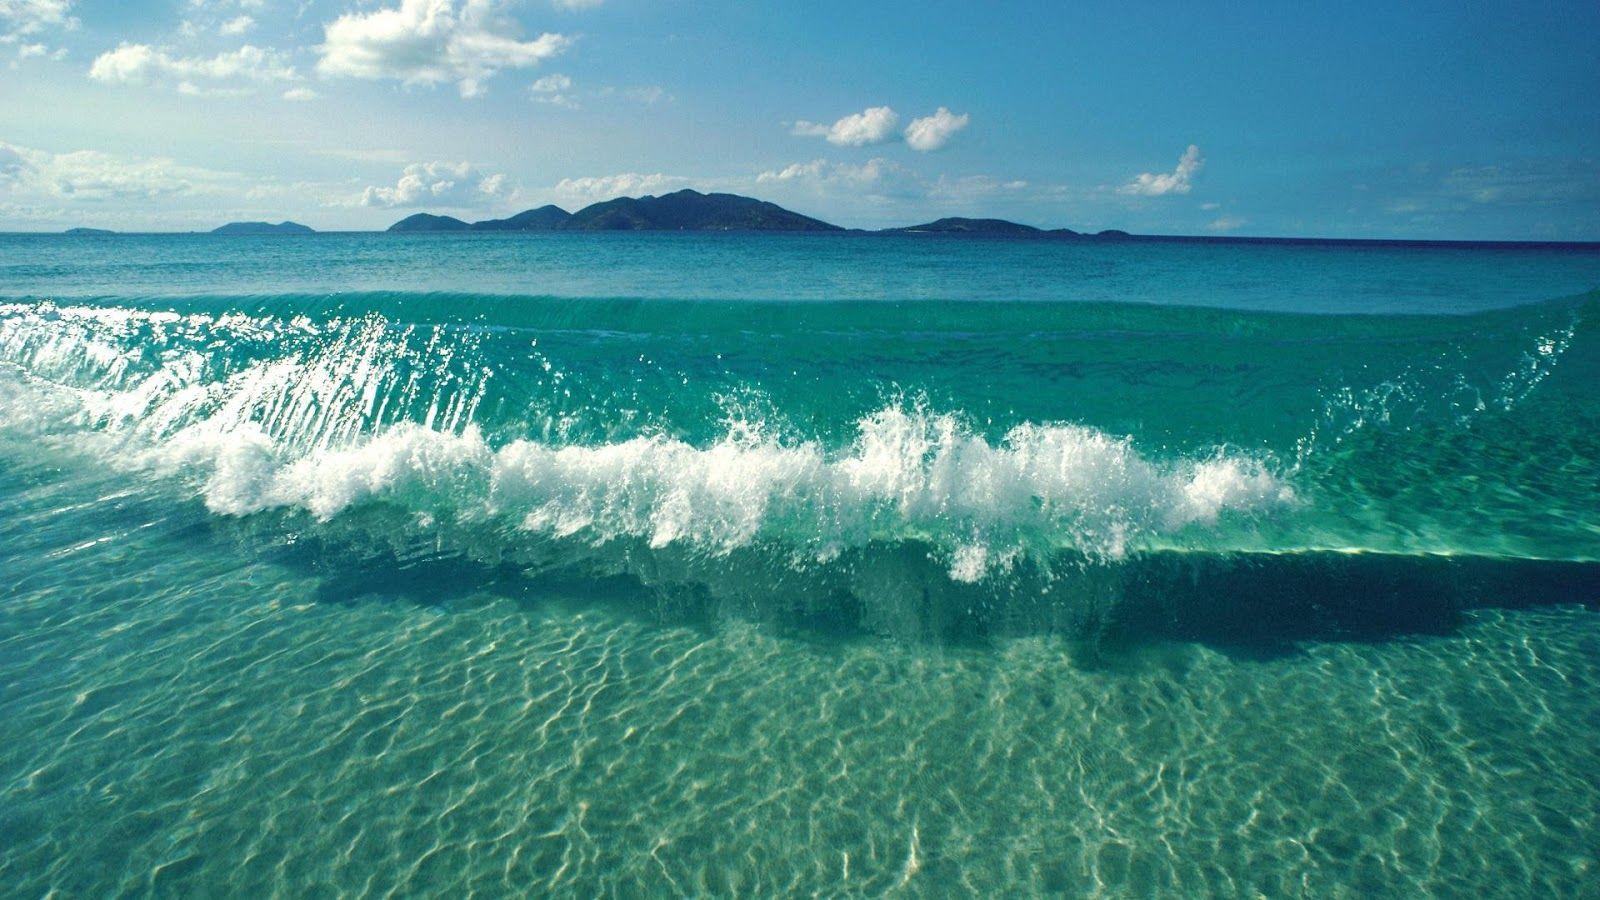 Relaxing Ocean Wallpapers - Top Free Relaxing Ocean Backgrounds ...